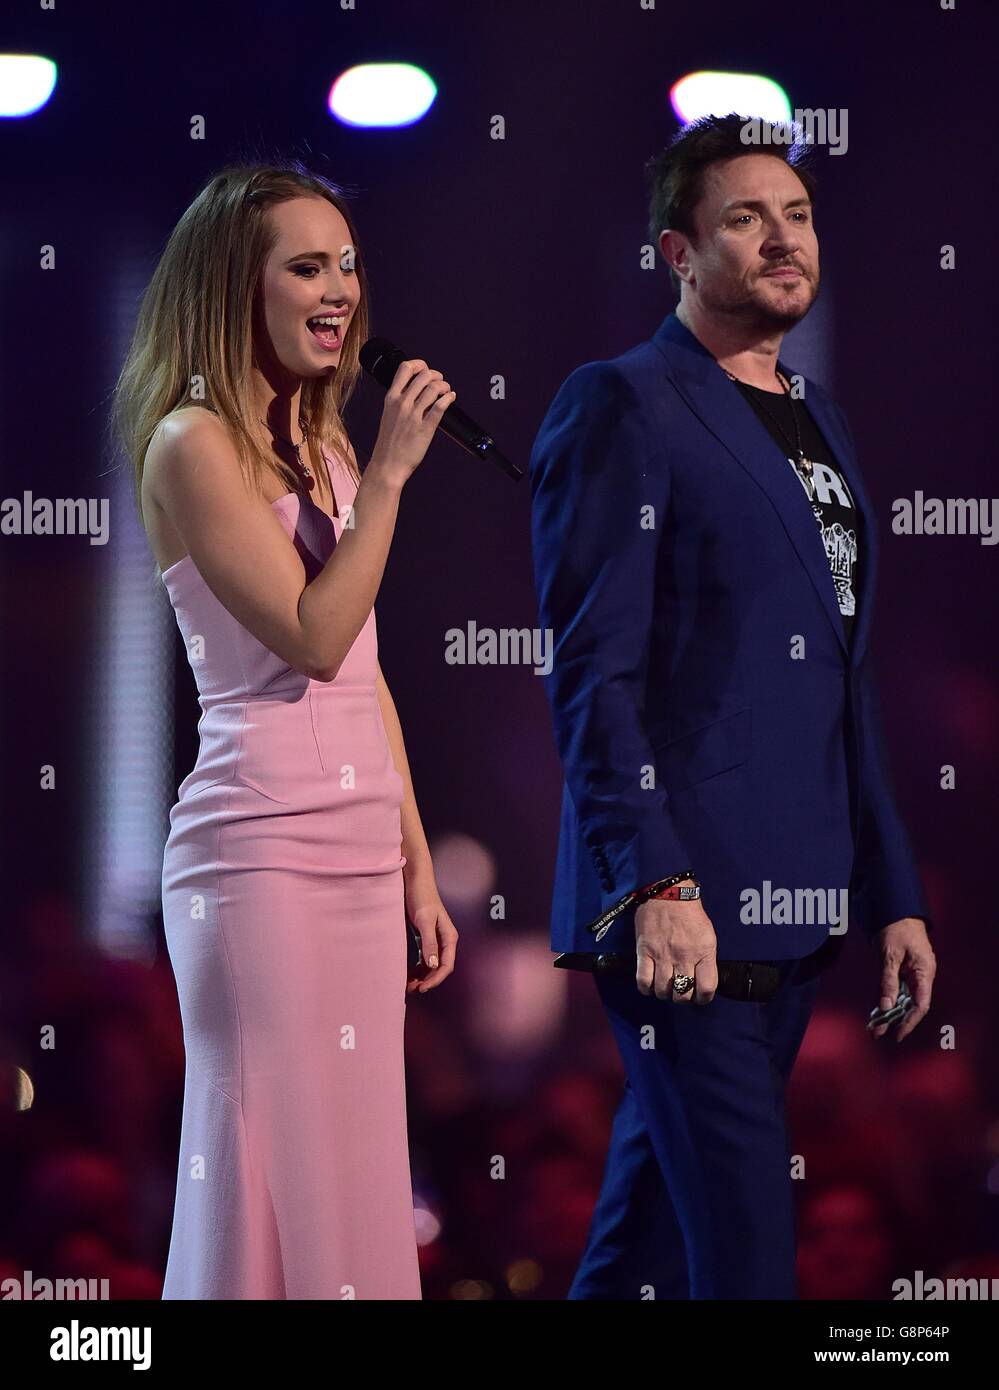 Brit Awards 2016 - spectacle - Londres.Suki Waterhouse (à gauche) et Simon Lebon sur scène lors des Brit Awards 2016 à l'O2 Arena, Londres. Banque D'Images